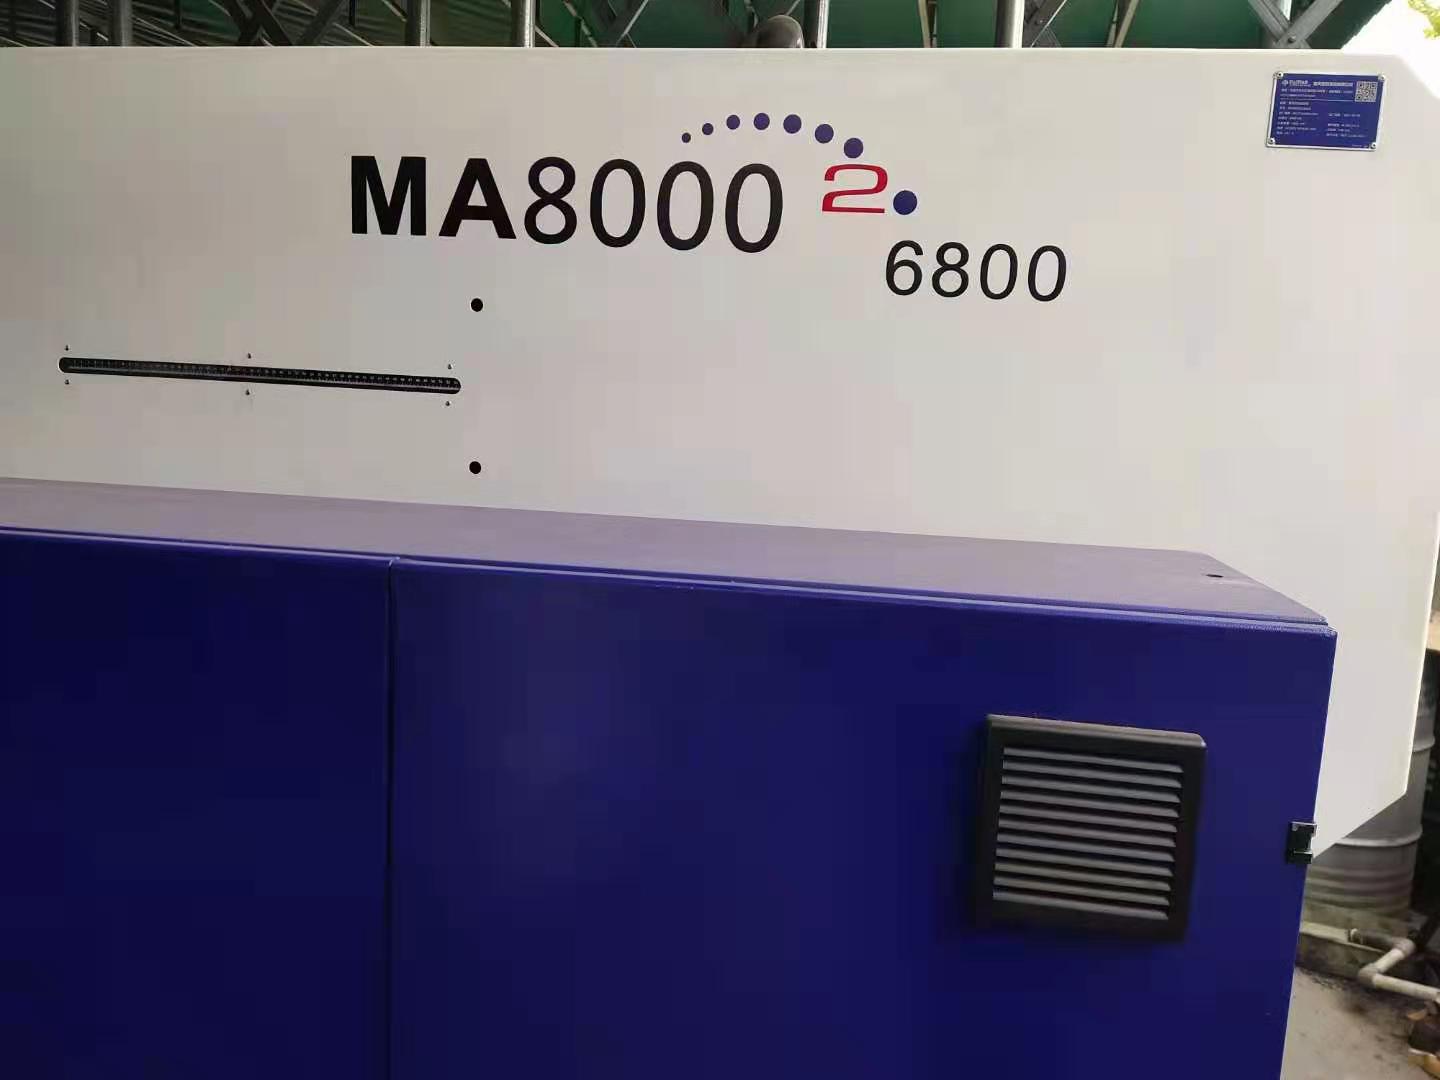 二手注塑机MA8000厂家供应  二手注塑机MA8000批发